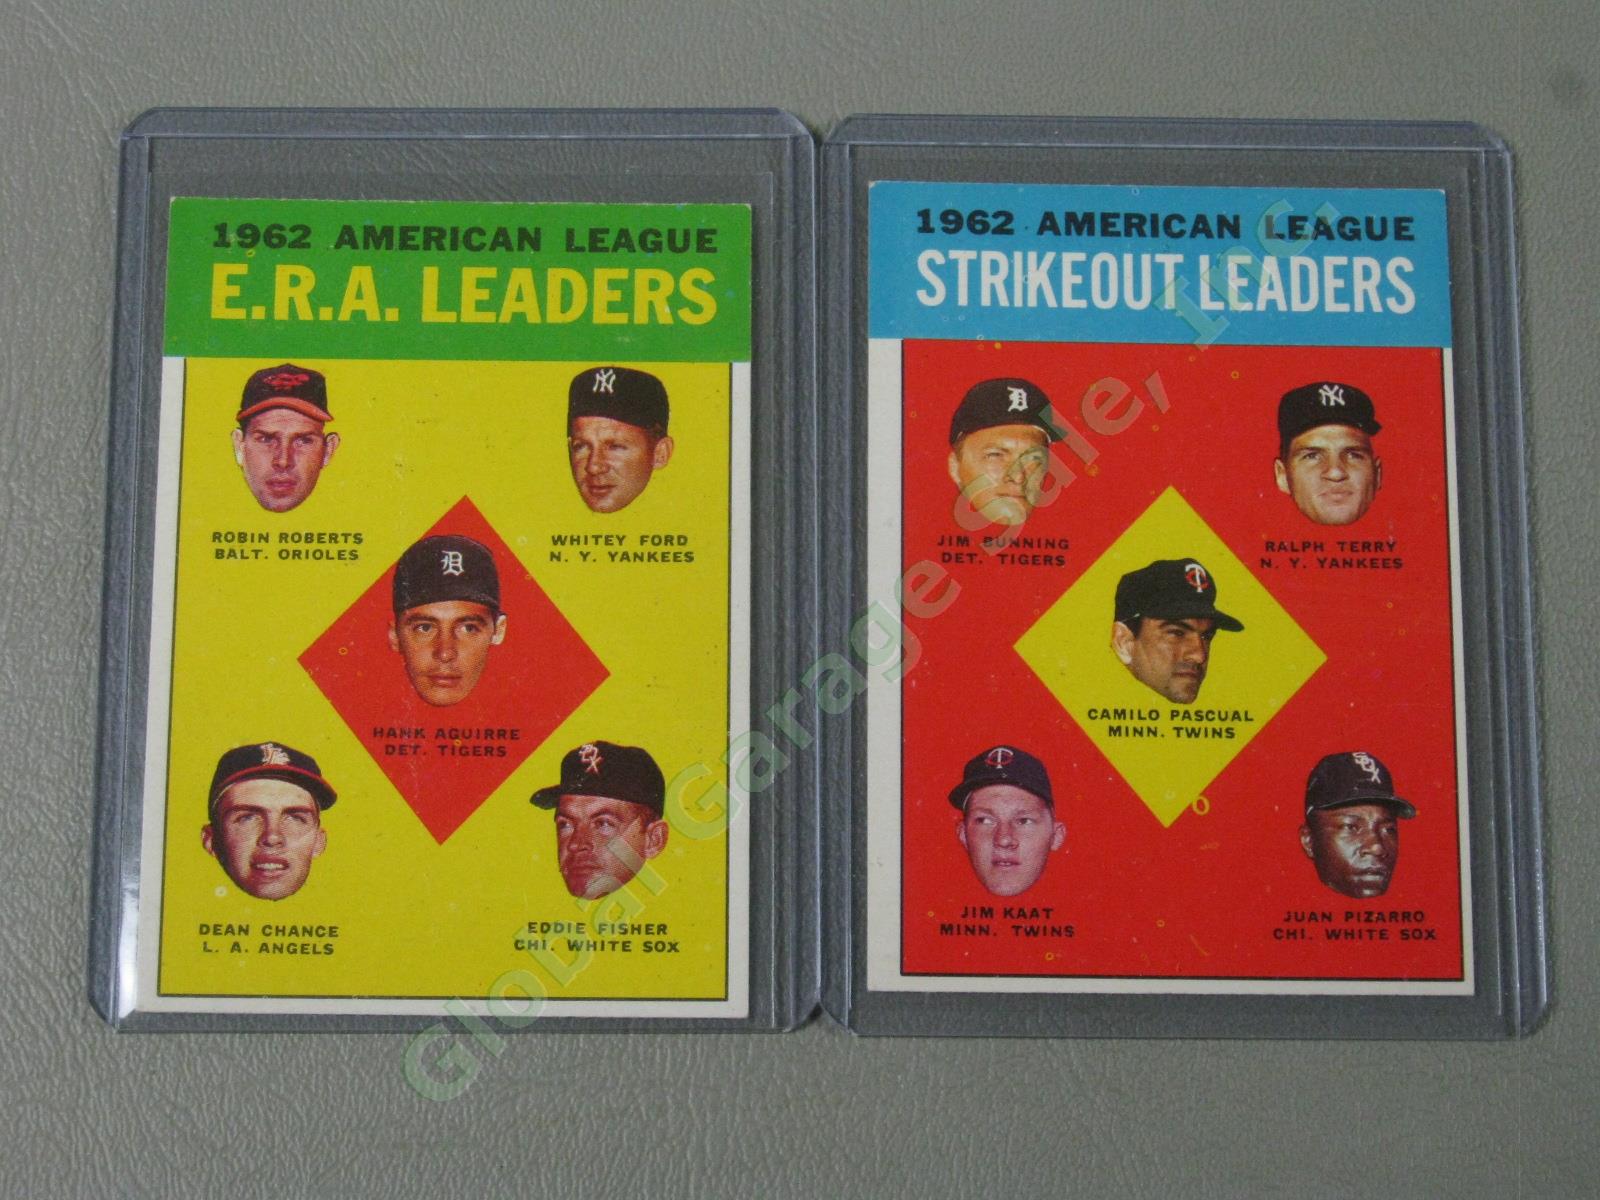 160 Vtg 1961 1962 1963 Topps Baseball Card Lot w/ RBI Home Run Leaders + VG-EX 16